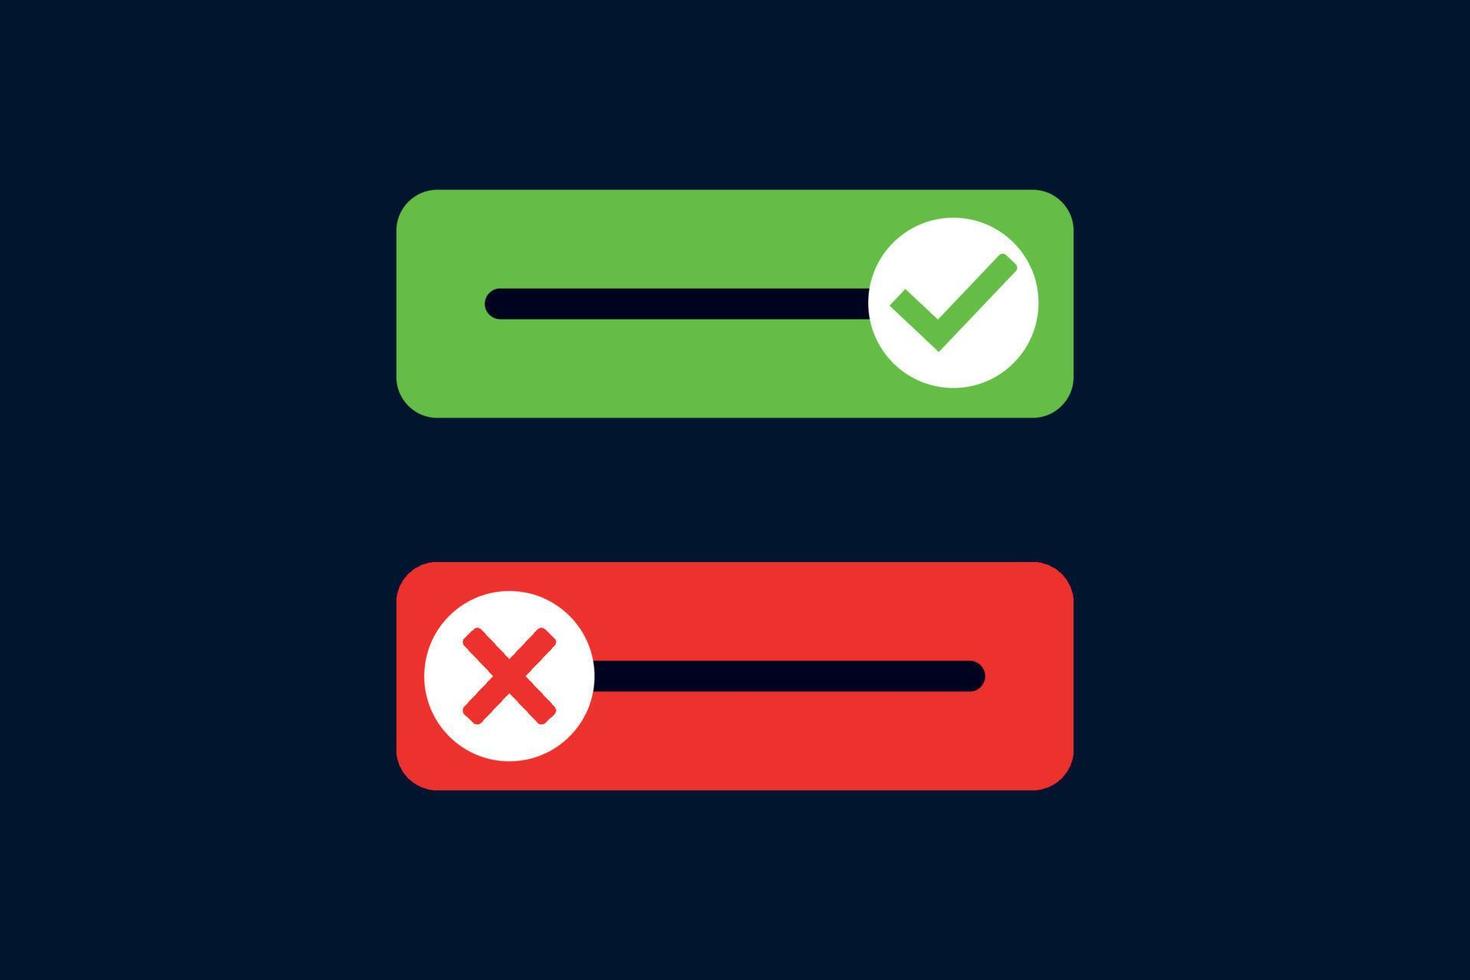 cheque verde e marca da cruz vermelha com elemento de ilustração vetorial de botões rejeitados aprovados vetor